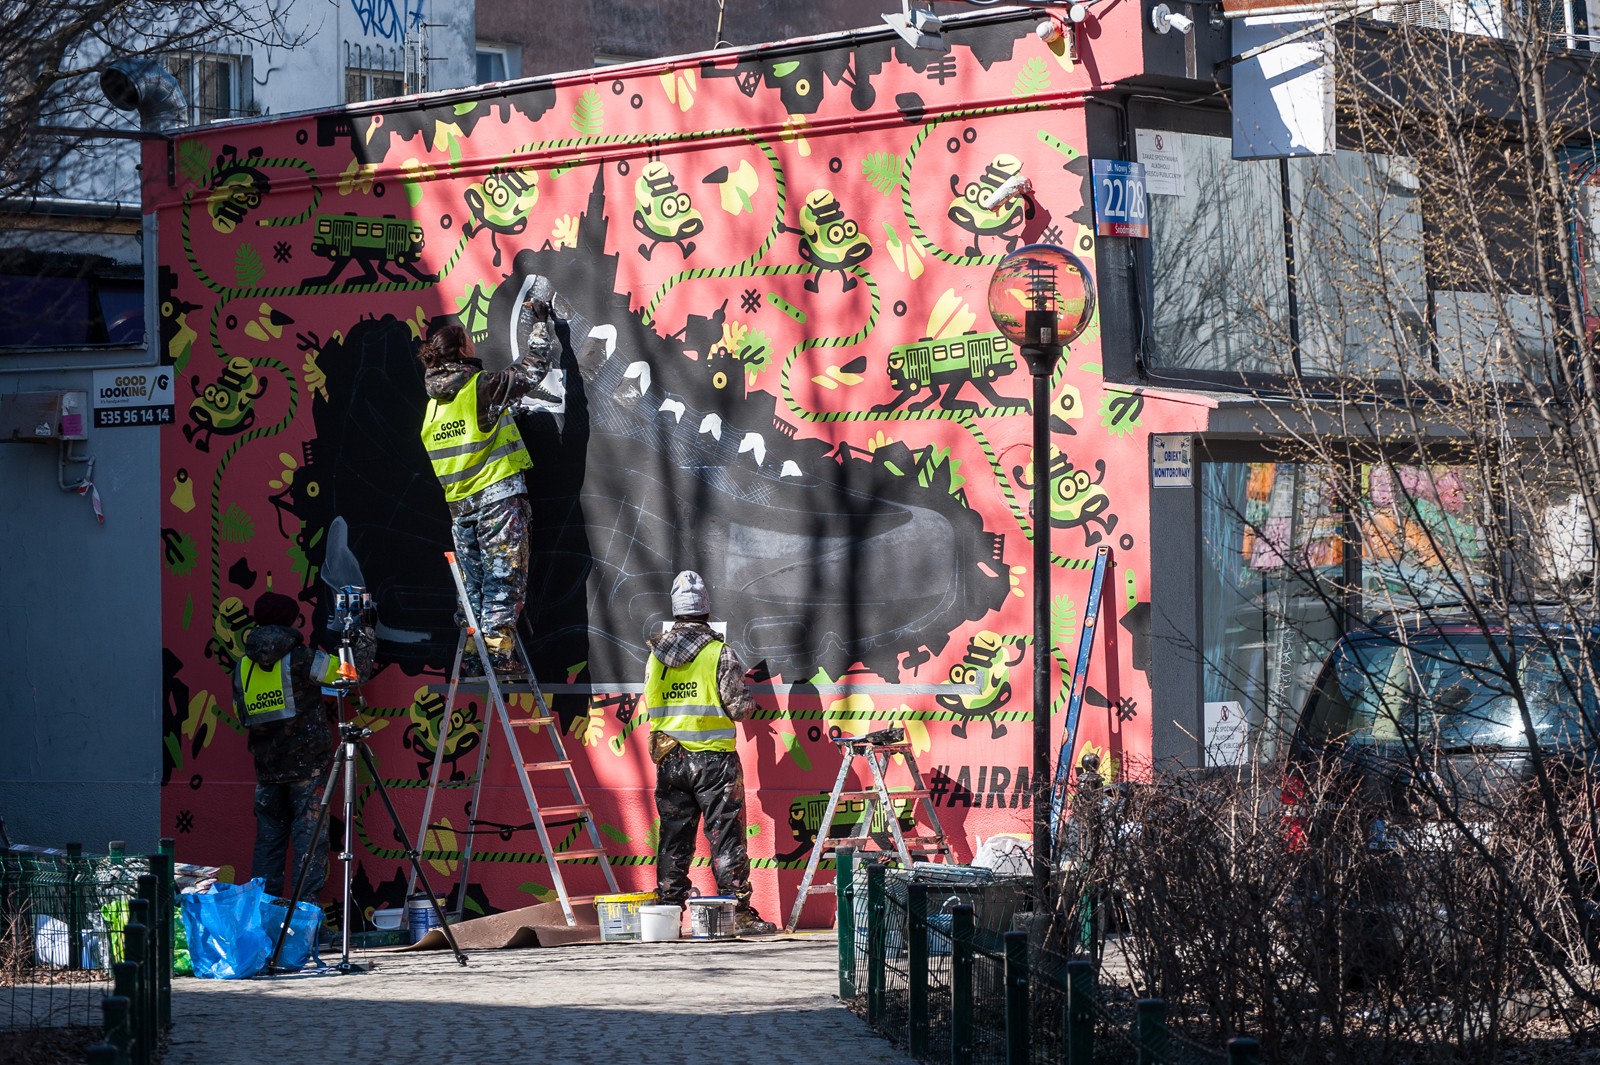 Mural Nike Air Max w Warszawie na Pawilonach przy Nowym Świecie | Jan Kallwejt, Lis Kula oraz Swanski - AirMax Day 2016 | Portfolio